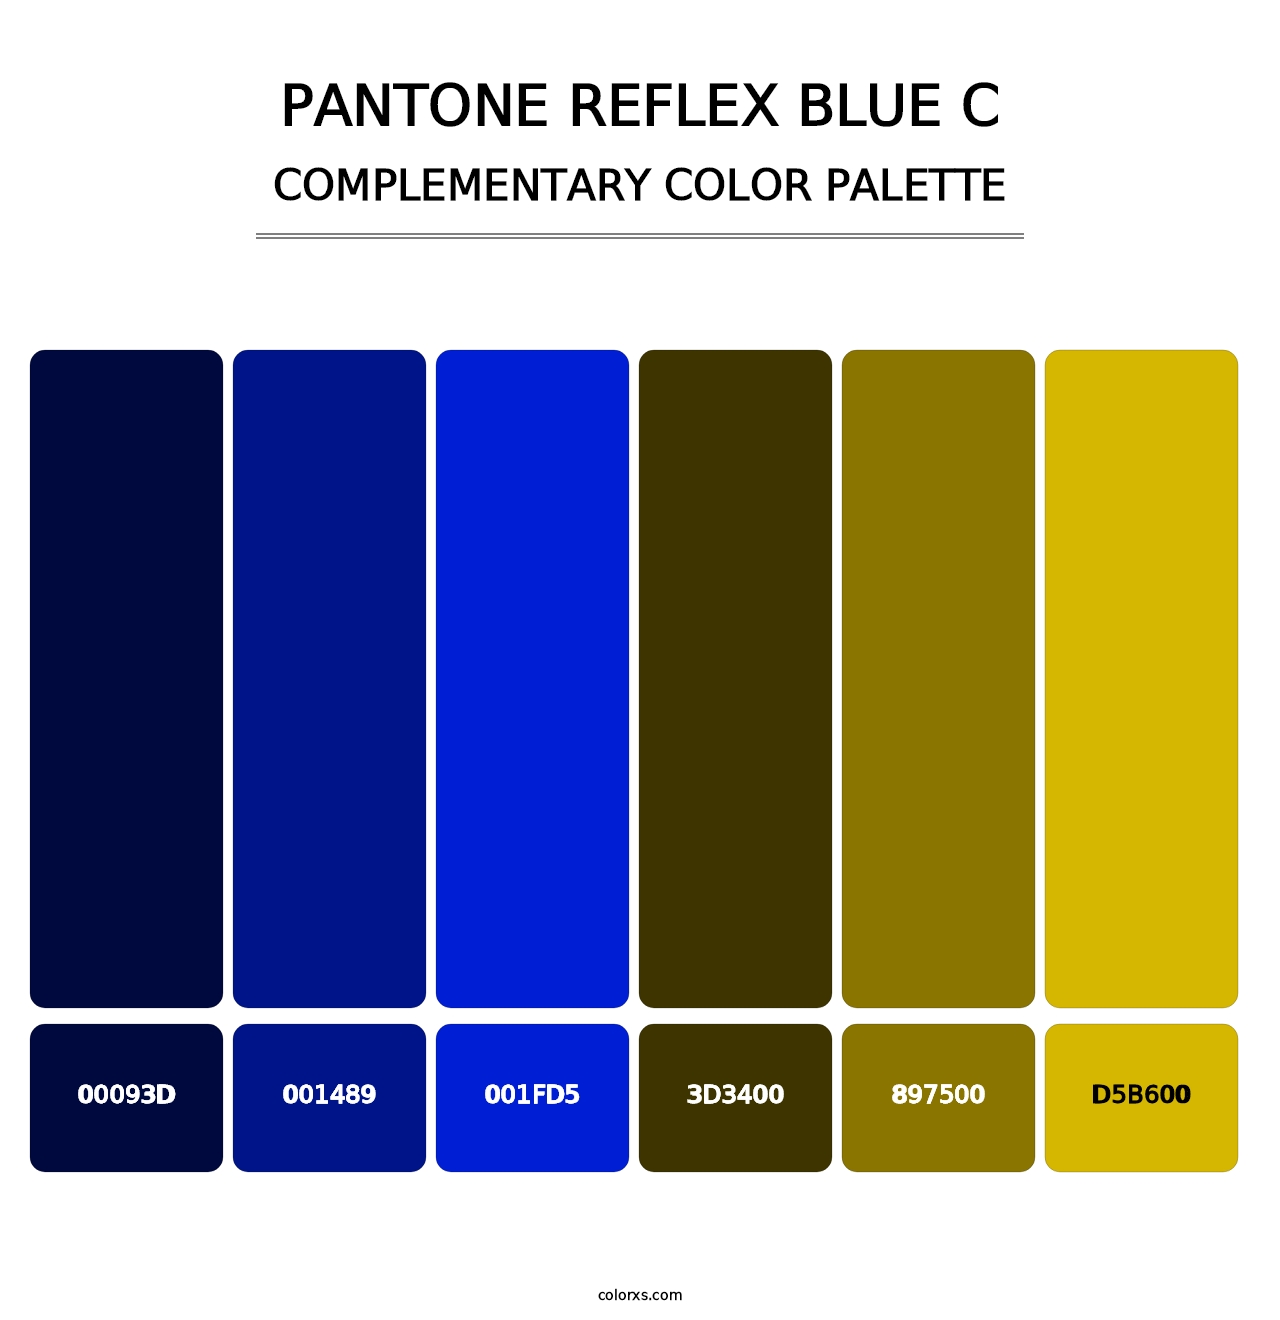 PANTONE Reflex Blue C - Complementary Color Palette